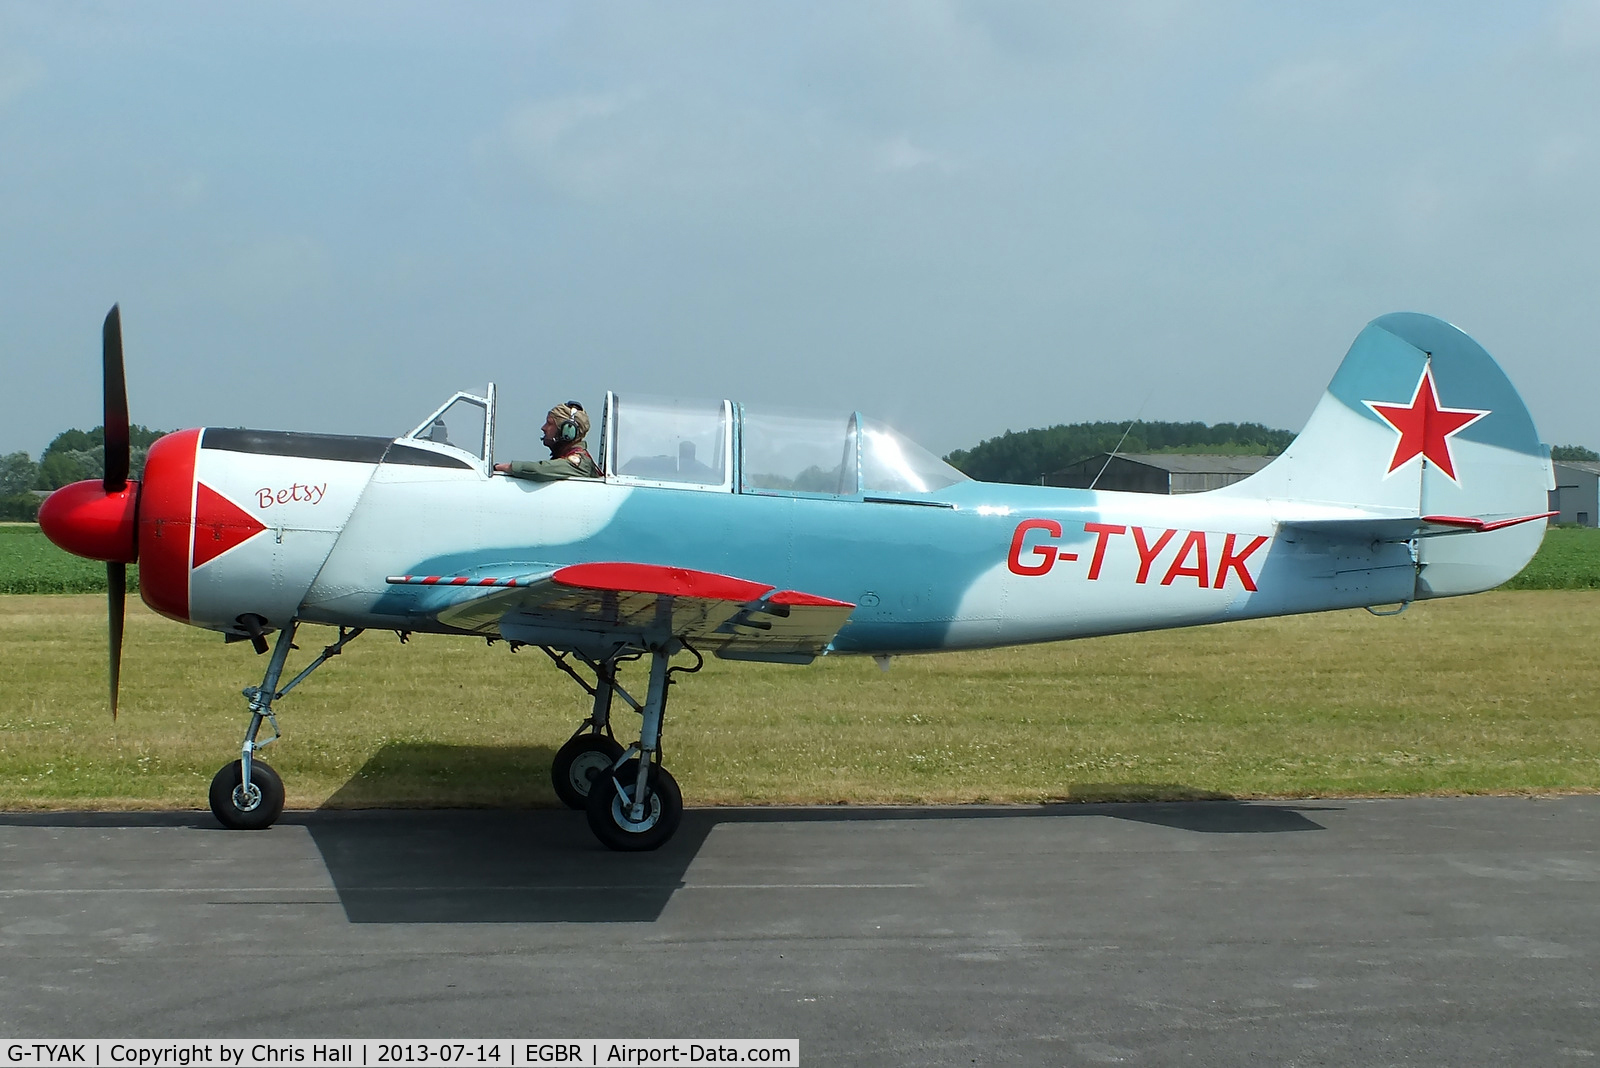 G-TYAK, 1989 Bacau Yak-52 C/N 899907, at the Real Aeroplane Club's Wings & Wheels fly-in, Breighton